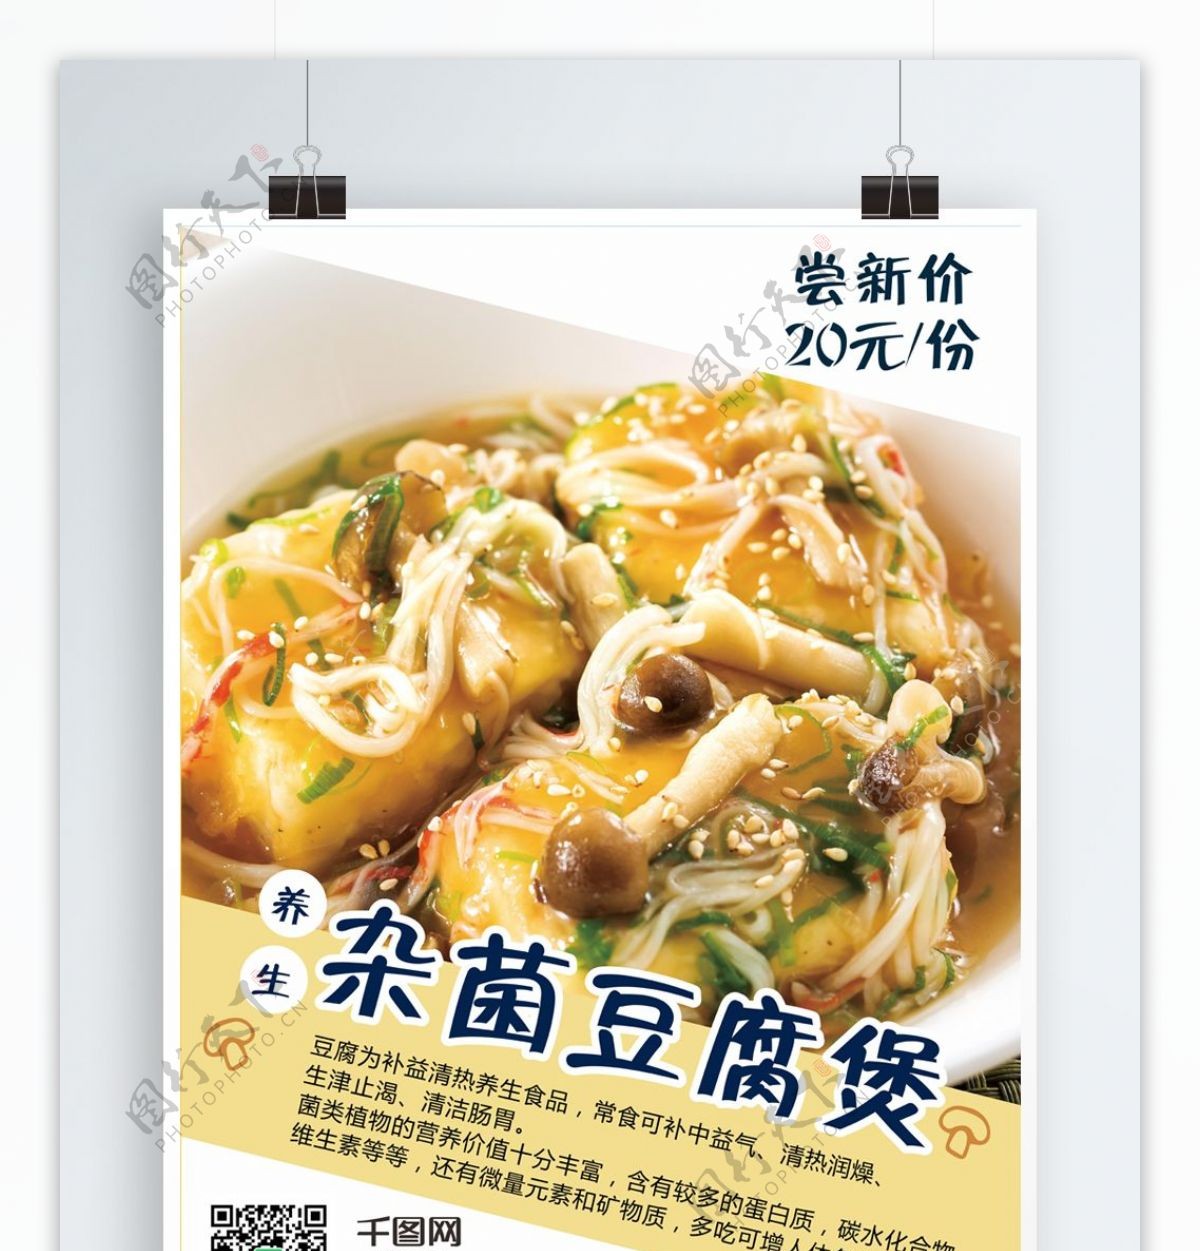 养生杂菌豆腐煲美食海报